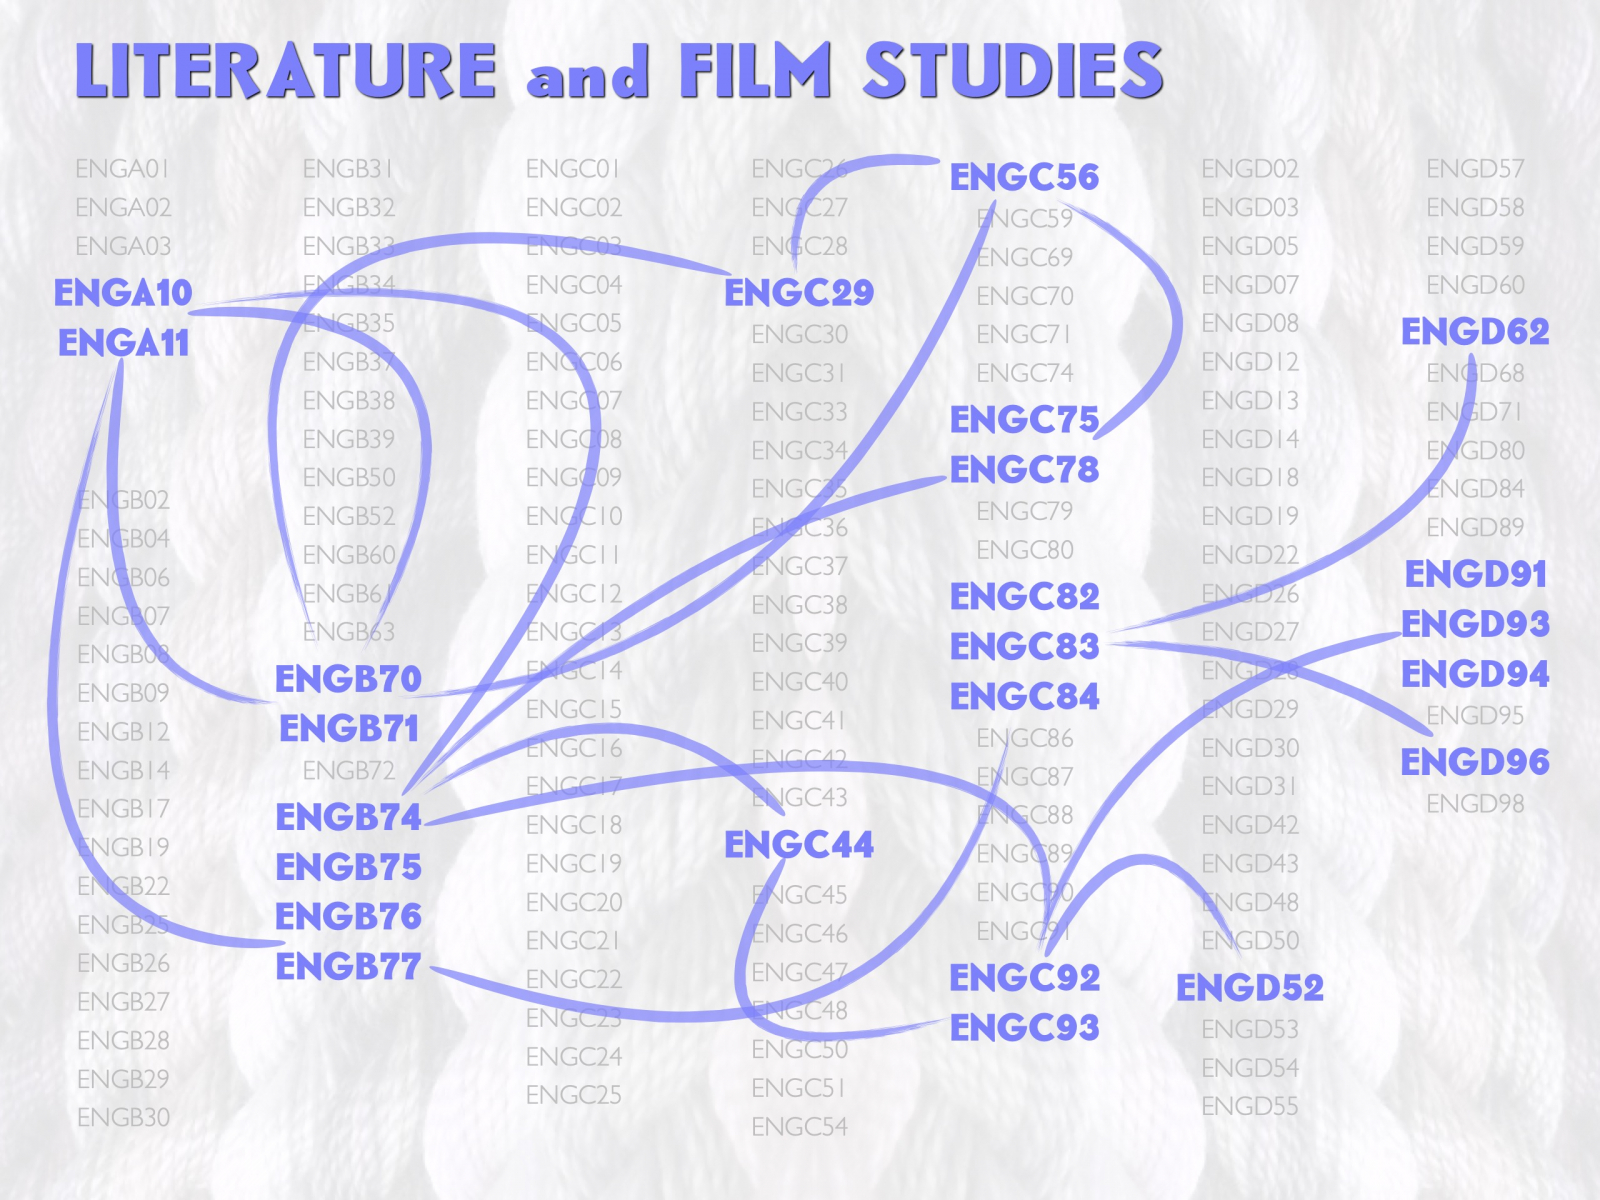 Literature and Film Studies